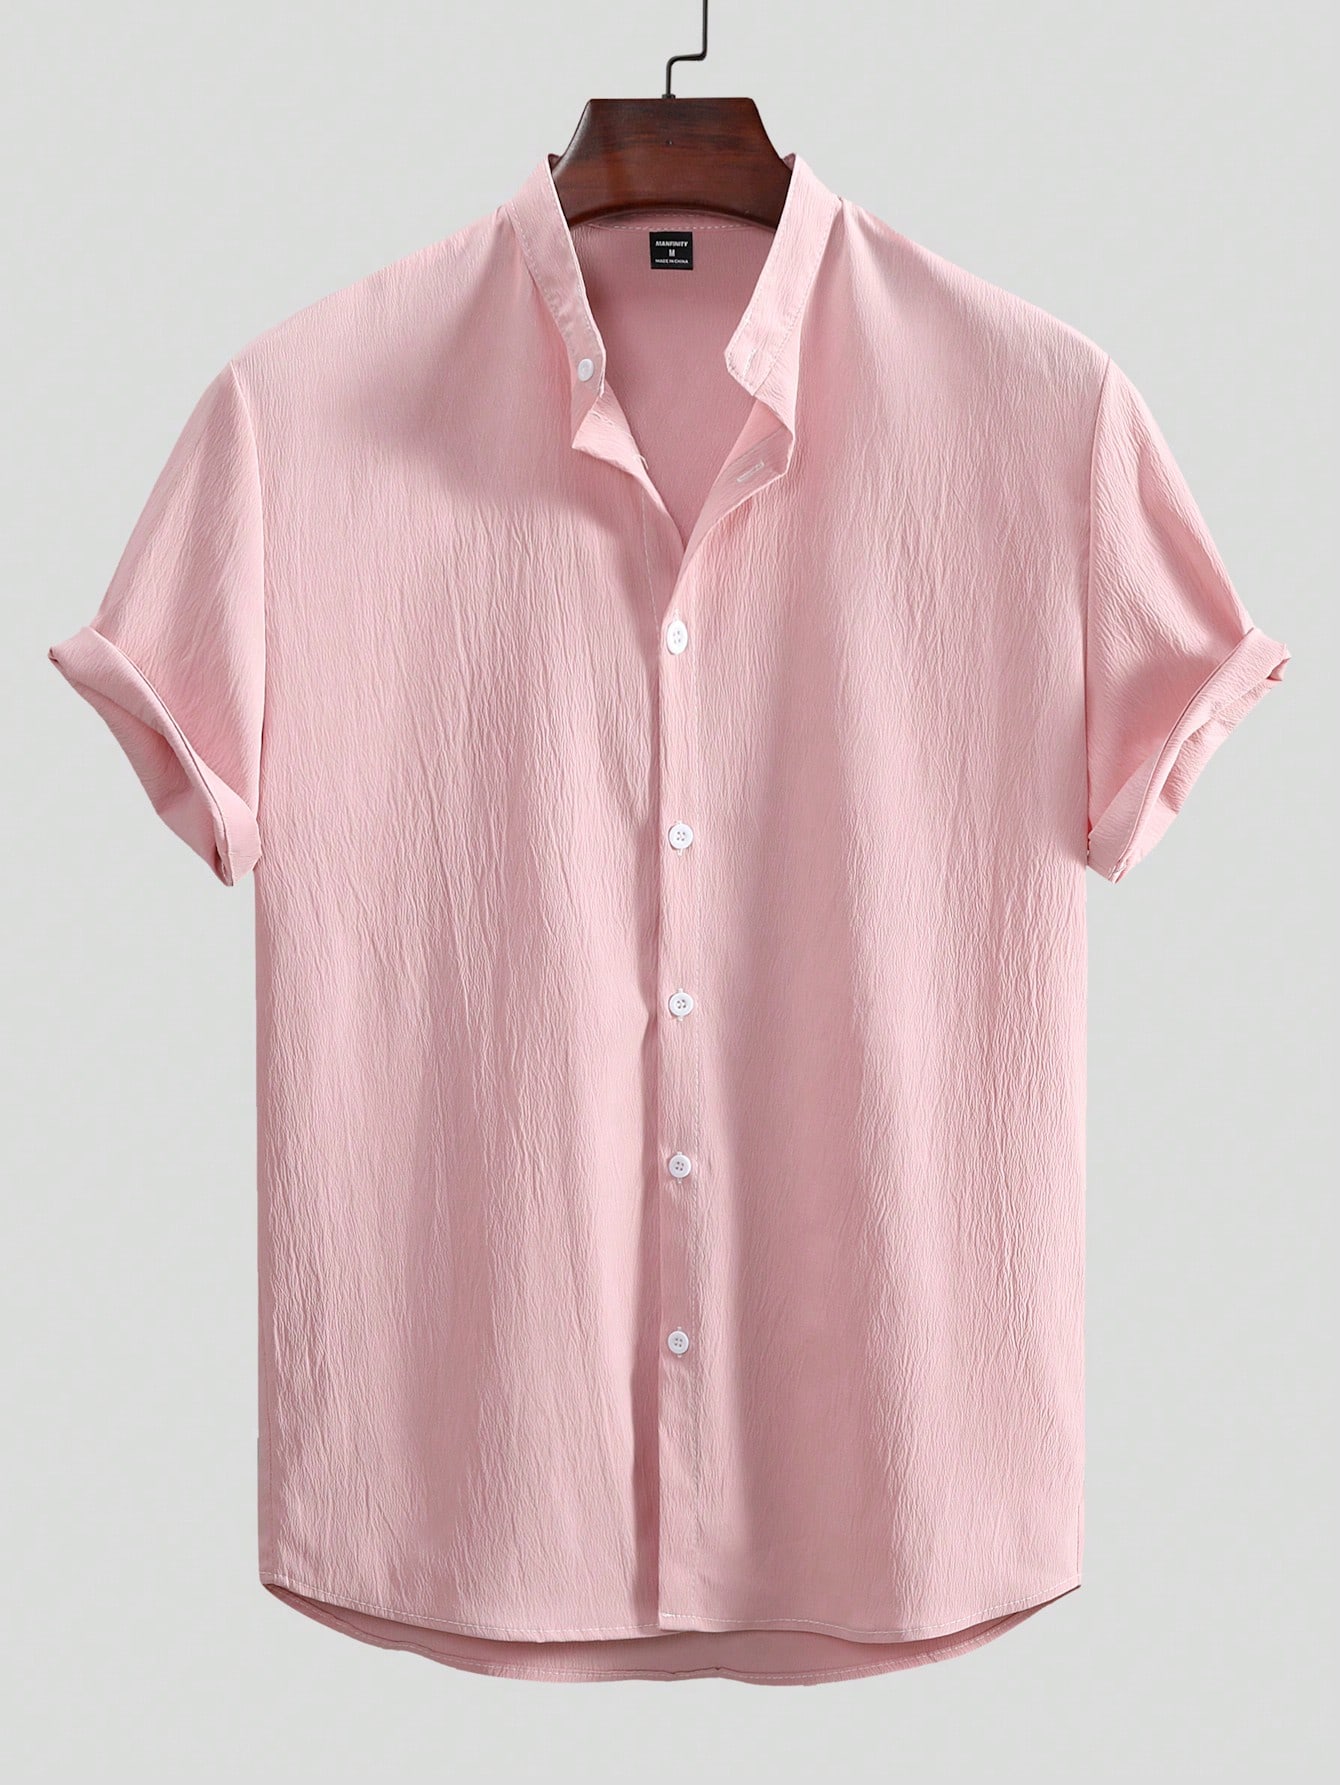 Мужская текстурированная рубашка с коротким рукавом Manfinity Homme на пуговицах спереди, розовый мужская однотонная повседневная рубашка с коротким рукавом и воротником поло синий